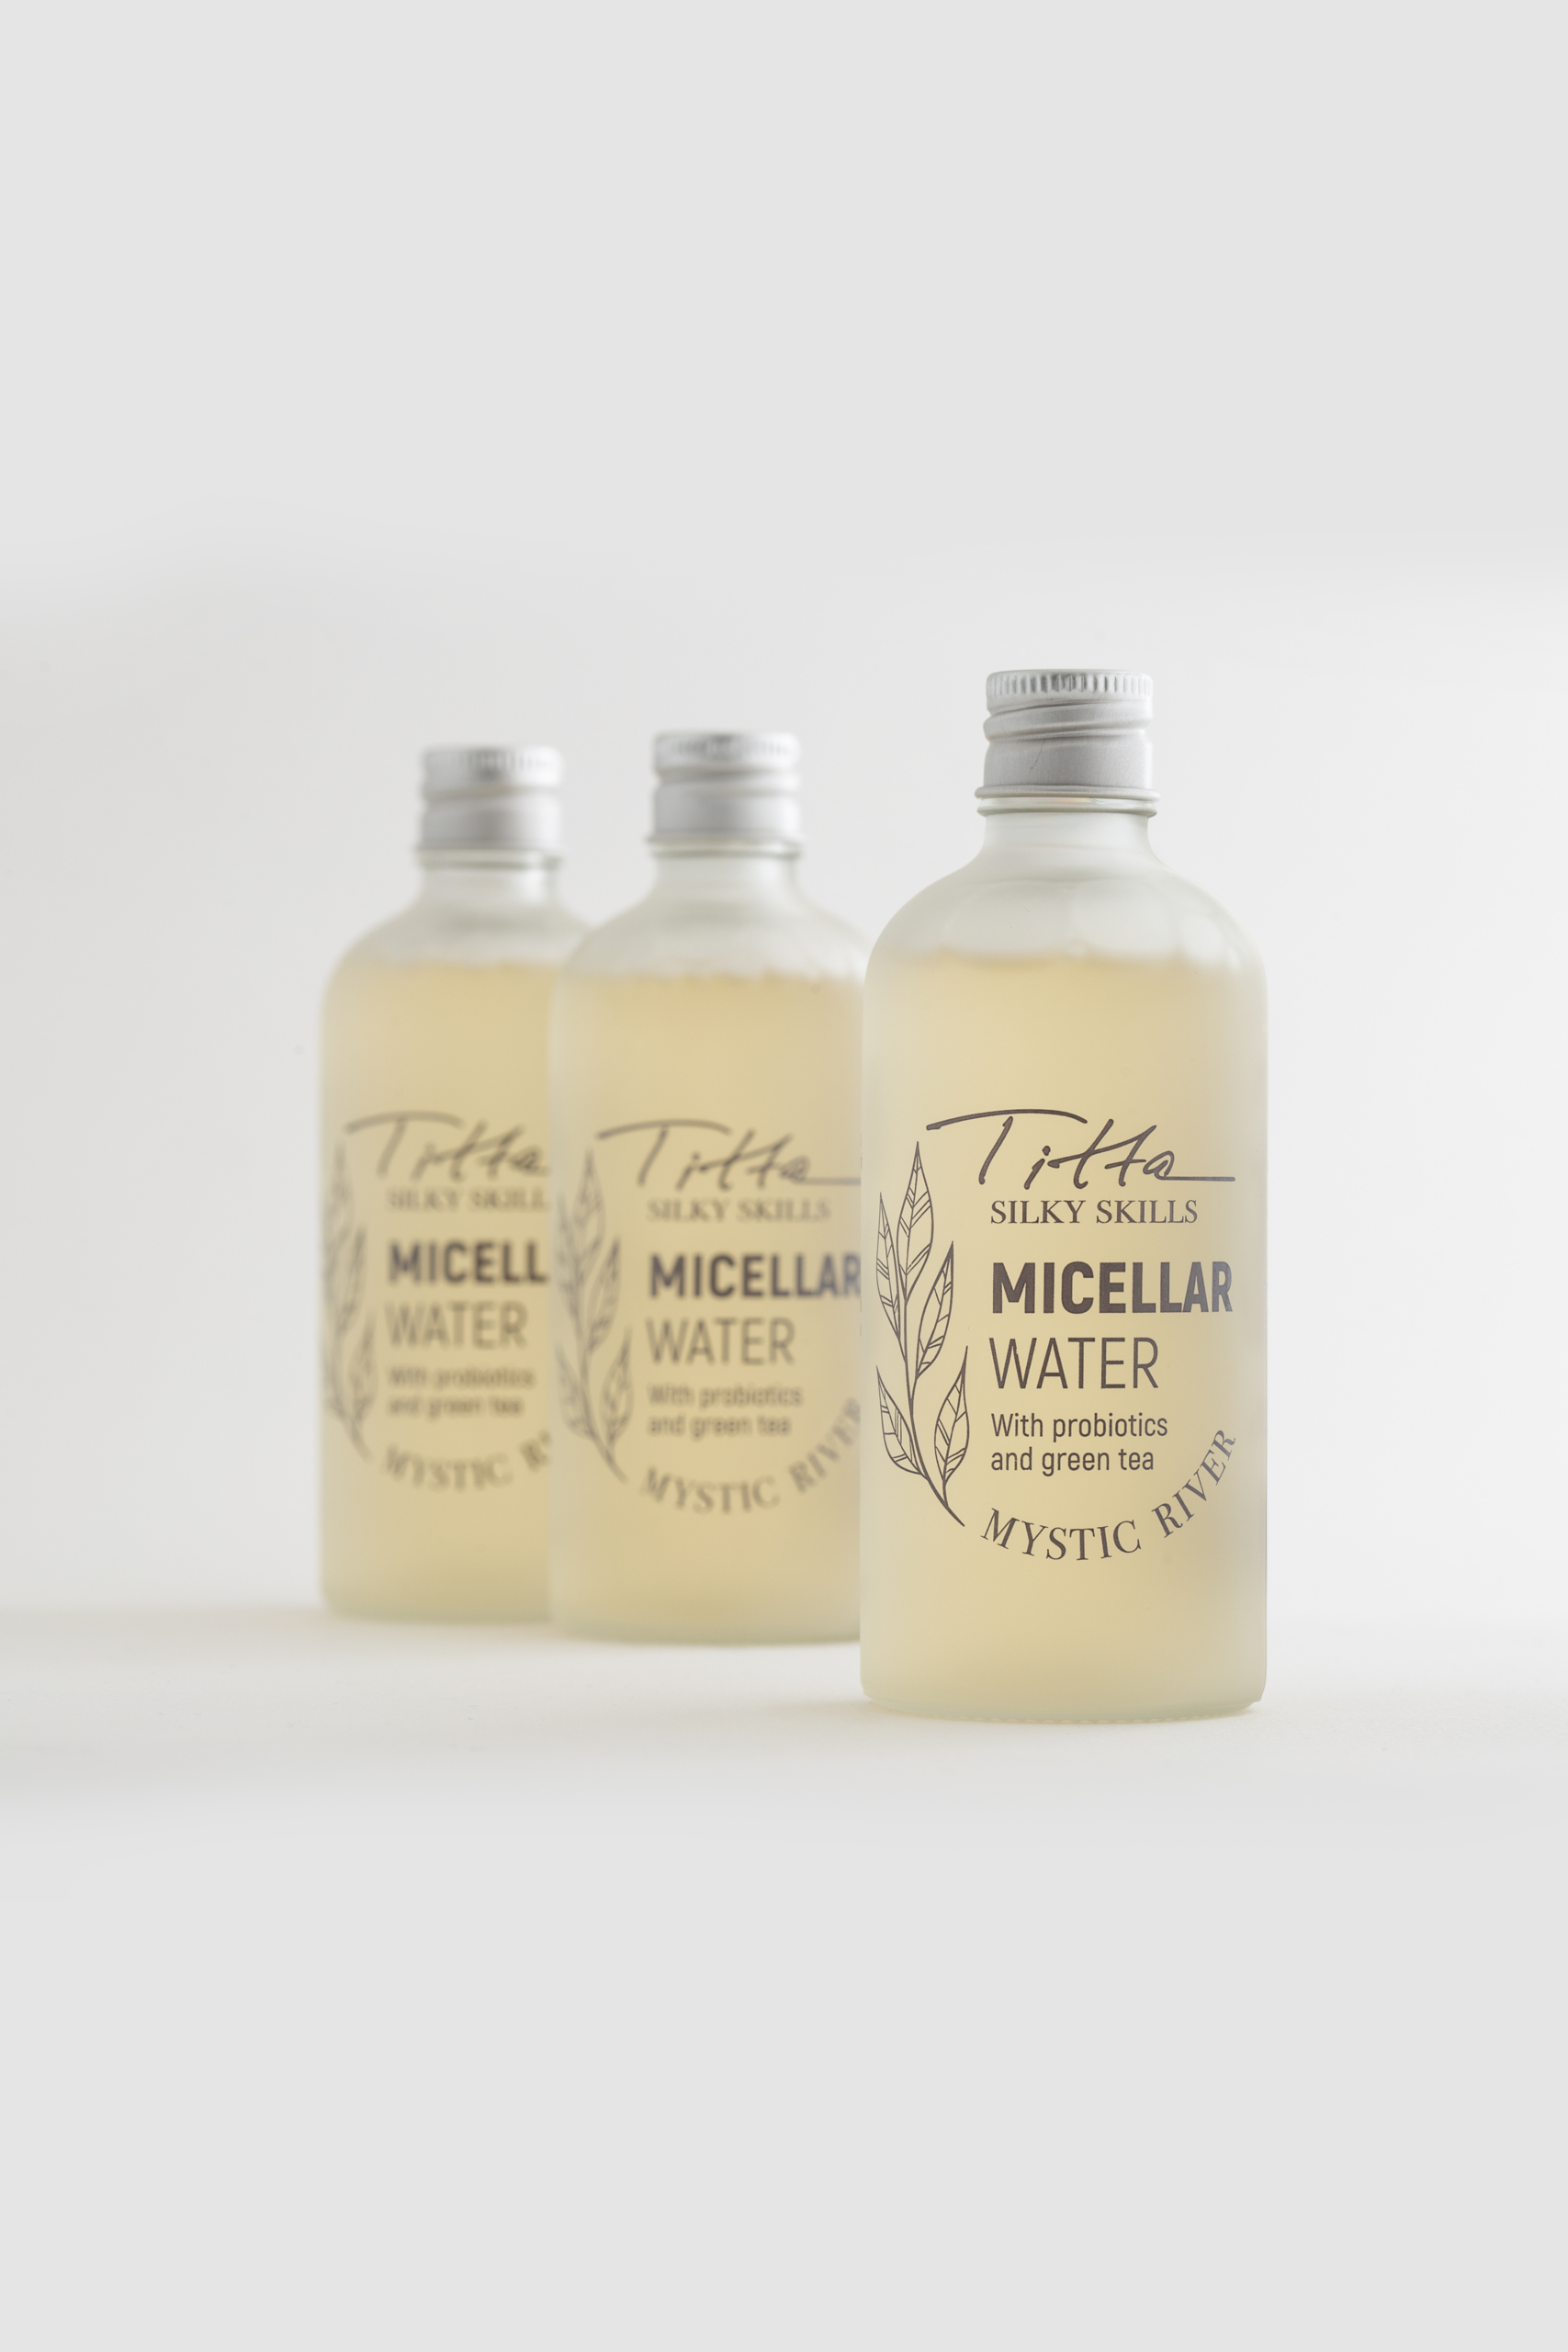 micellar-water-titta-silky-skills-probiotic-green-tea